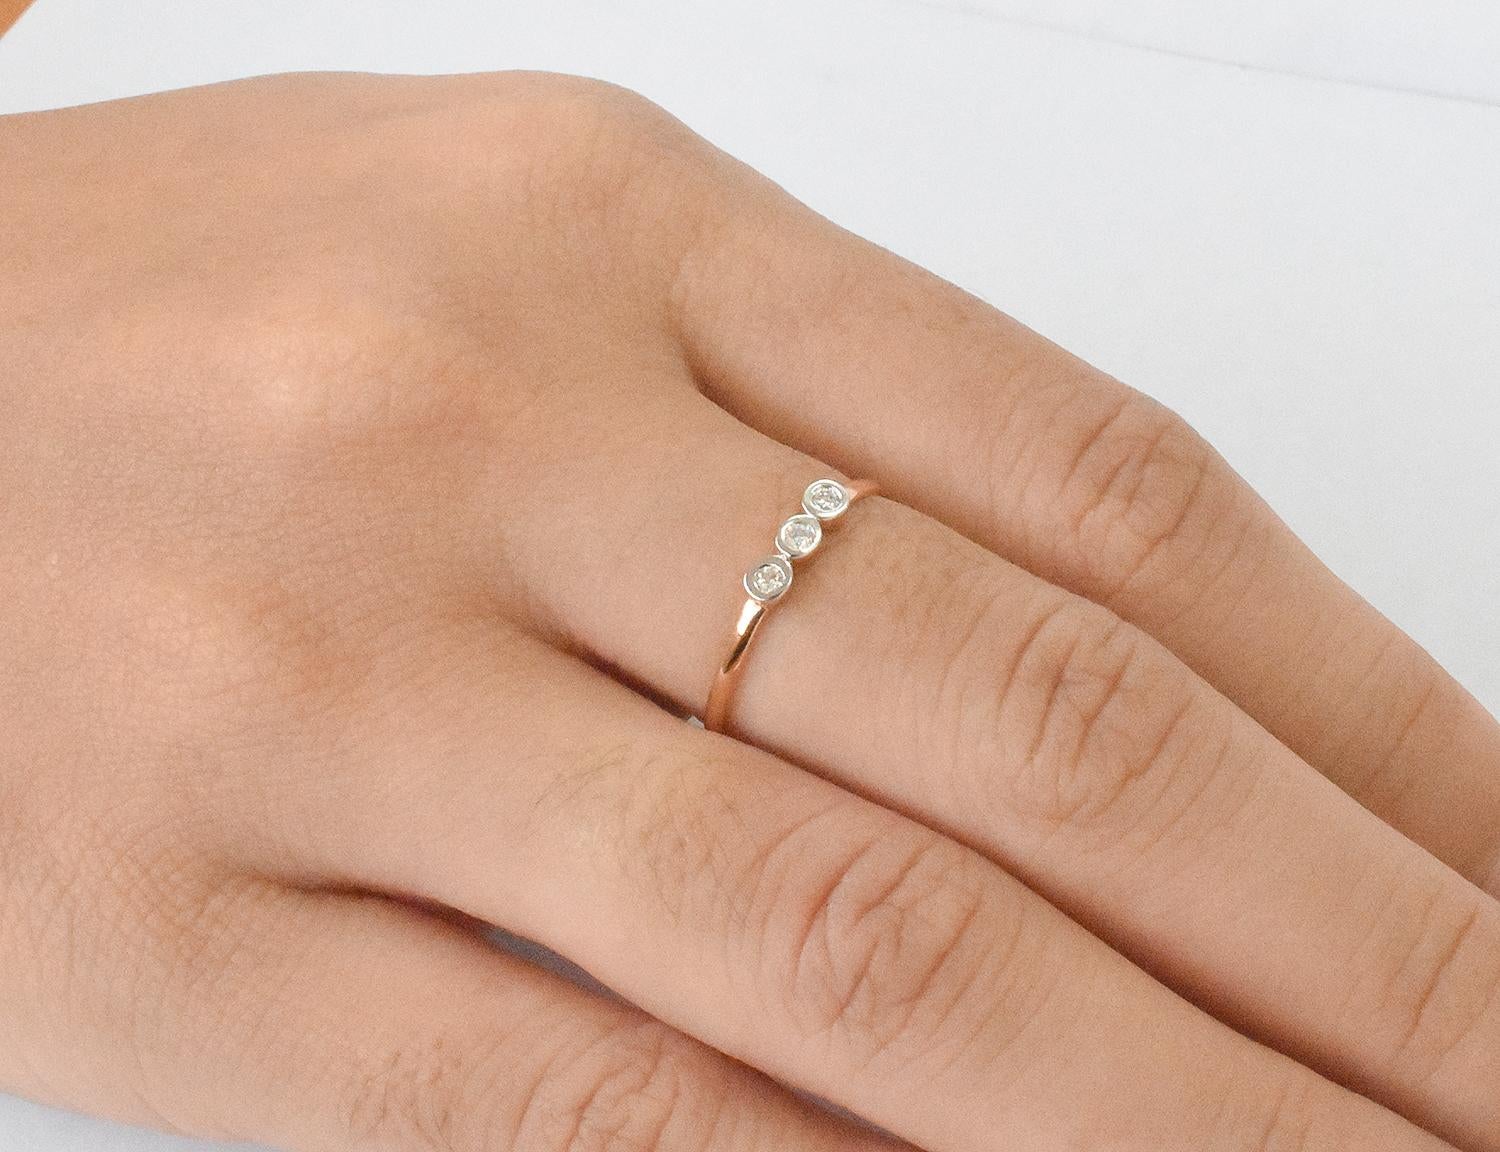 For Sale:  14k Gold Diamond 1.9 mm Ring Bezel Setting Three Diamond Ring Trio Diamond Ring 8